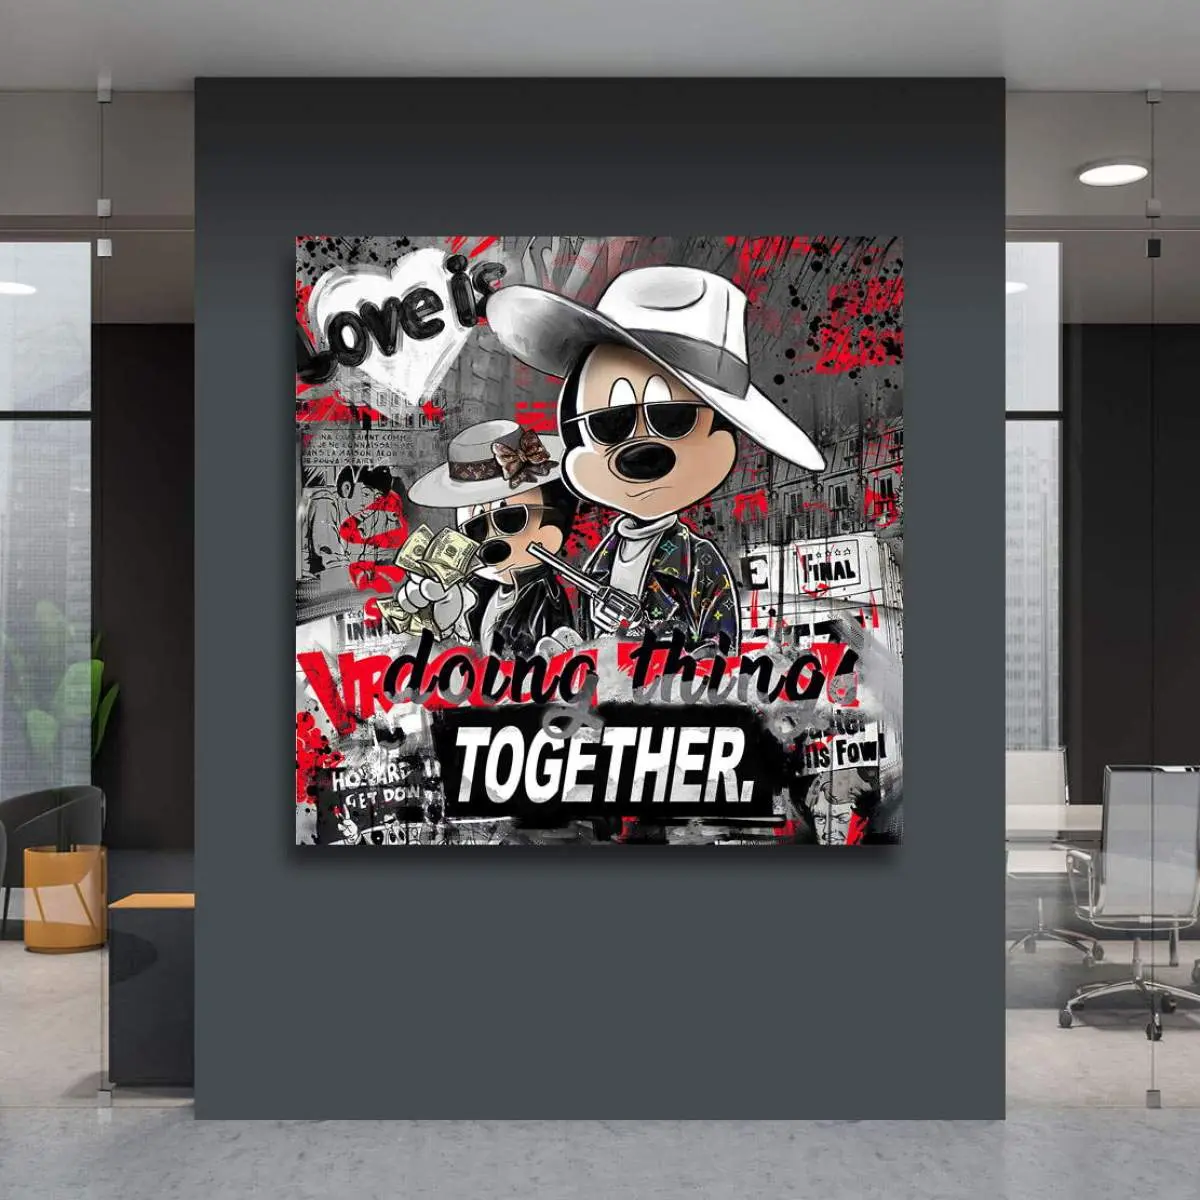 Bonnie & Clyde Wandbild von Kunstgestalten24